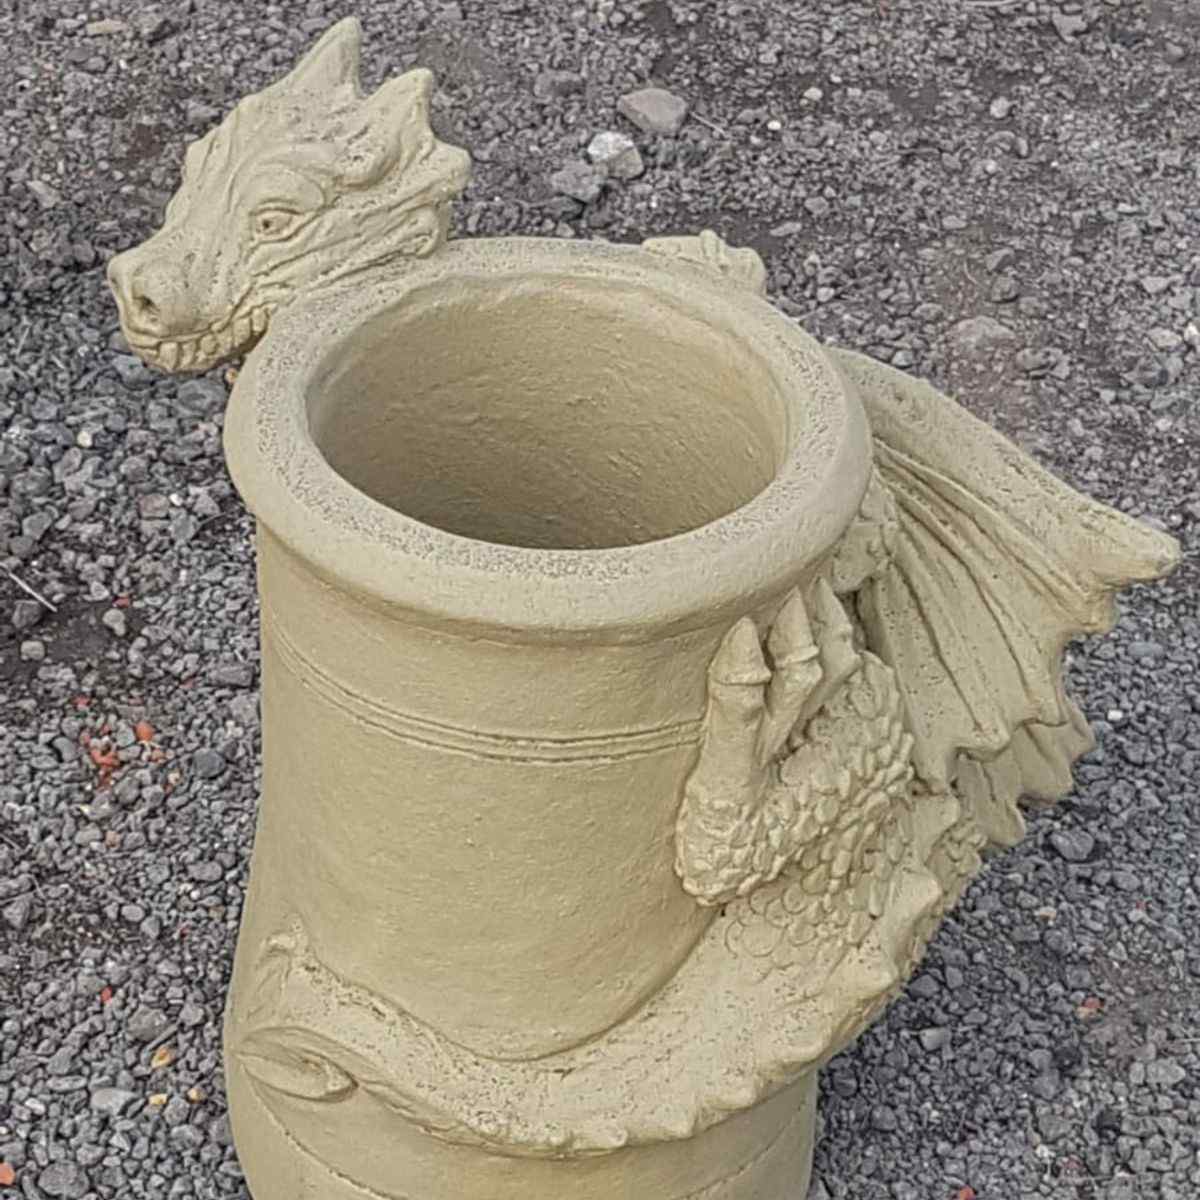 Smirk bathstone dragon chimney pot